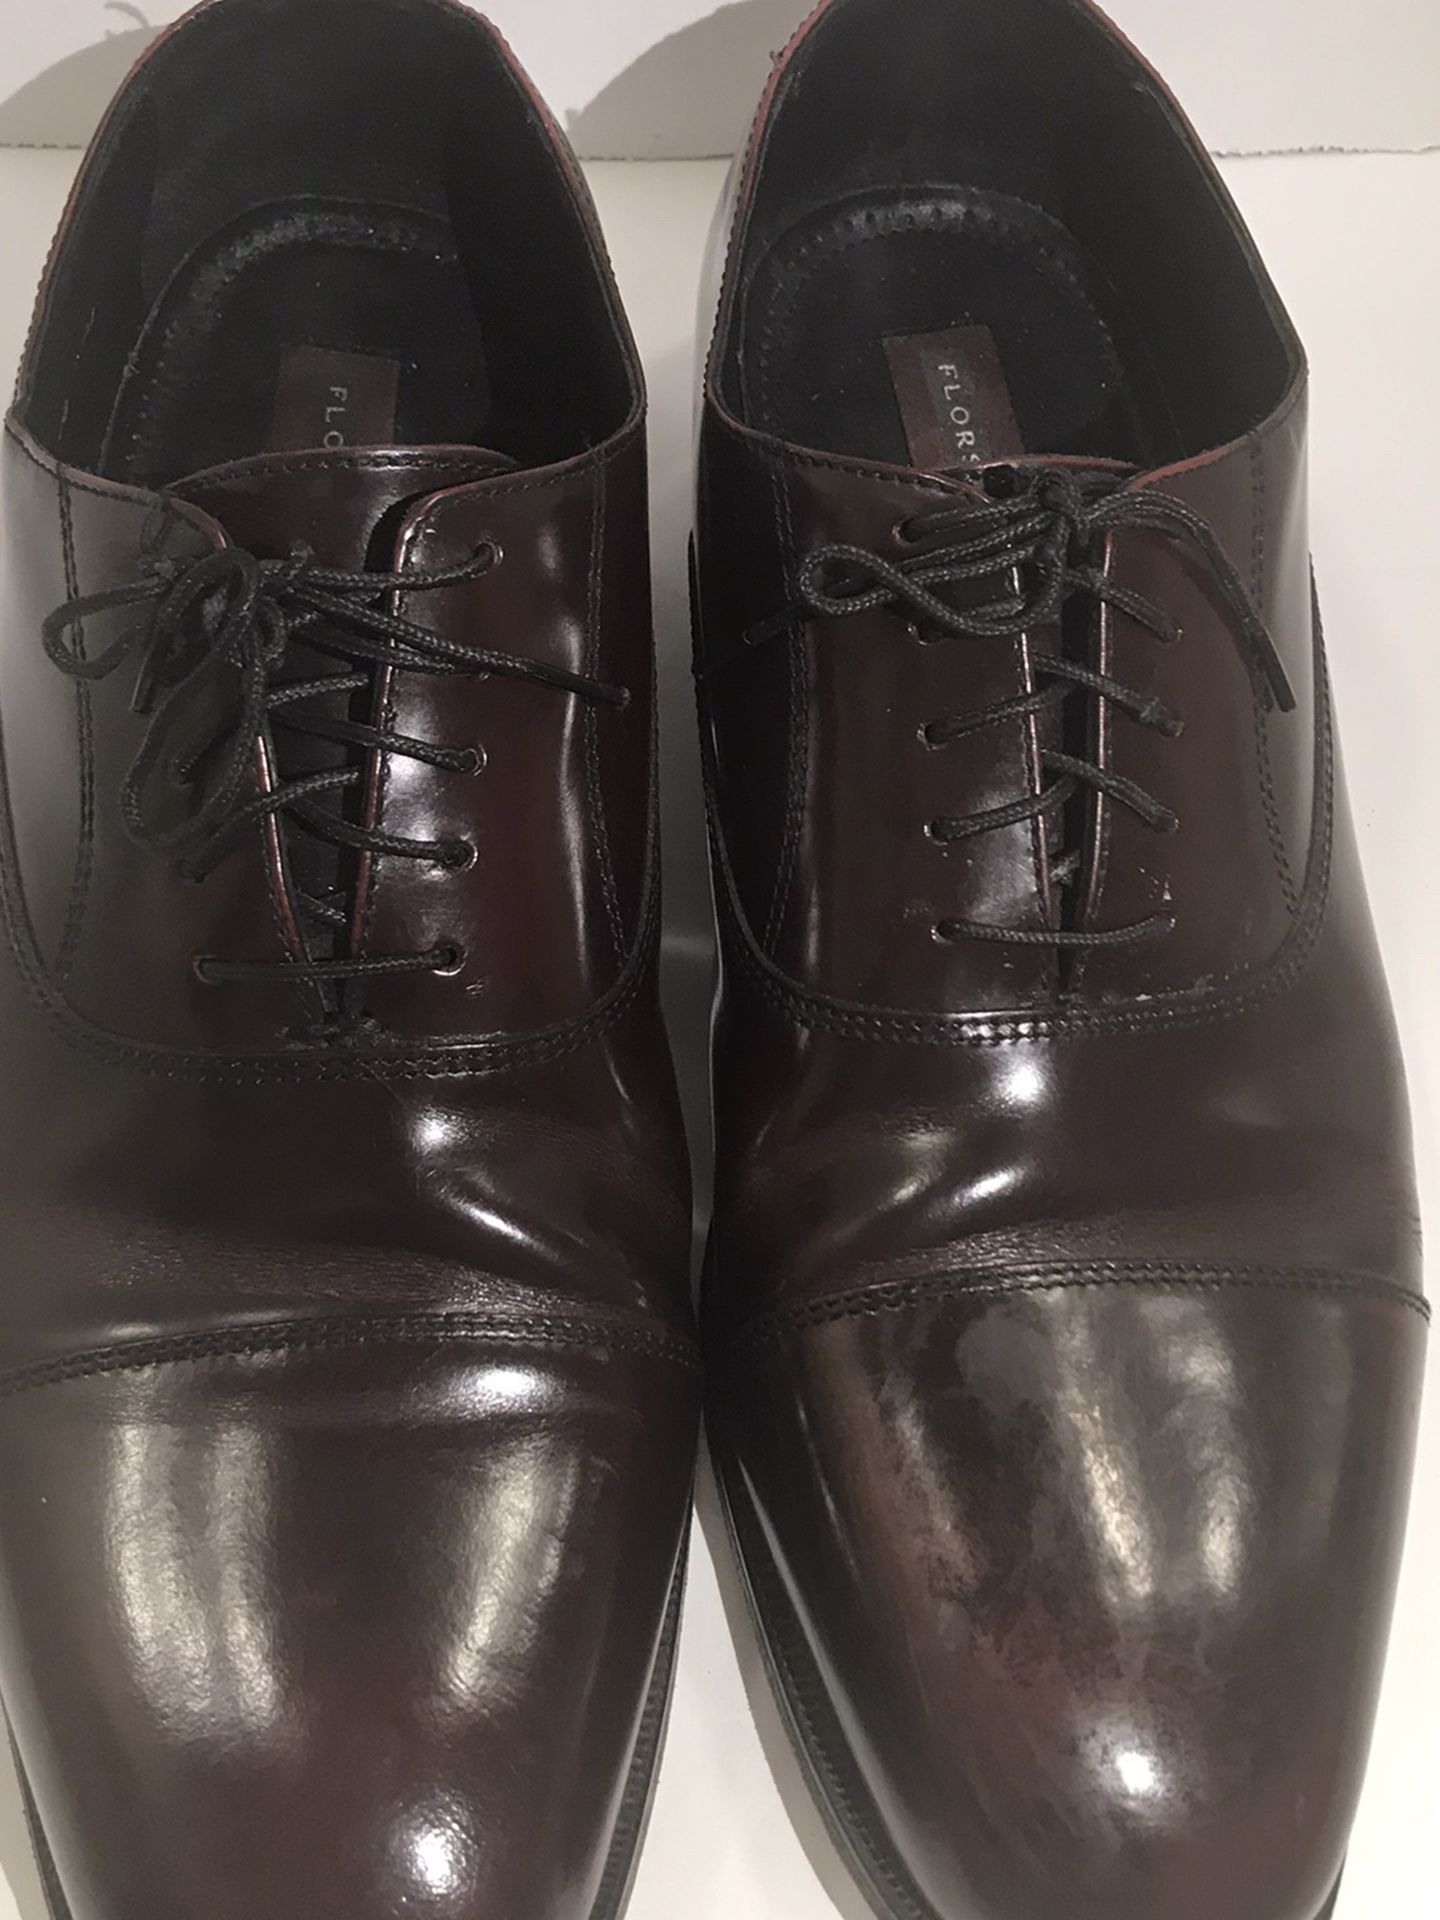 Florsheim Shoes Men's Size 12 Burgundy Cap Toe Oxfords Lace Up Leather